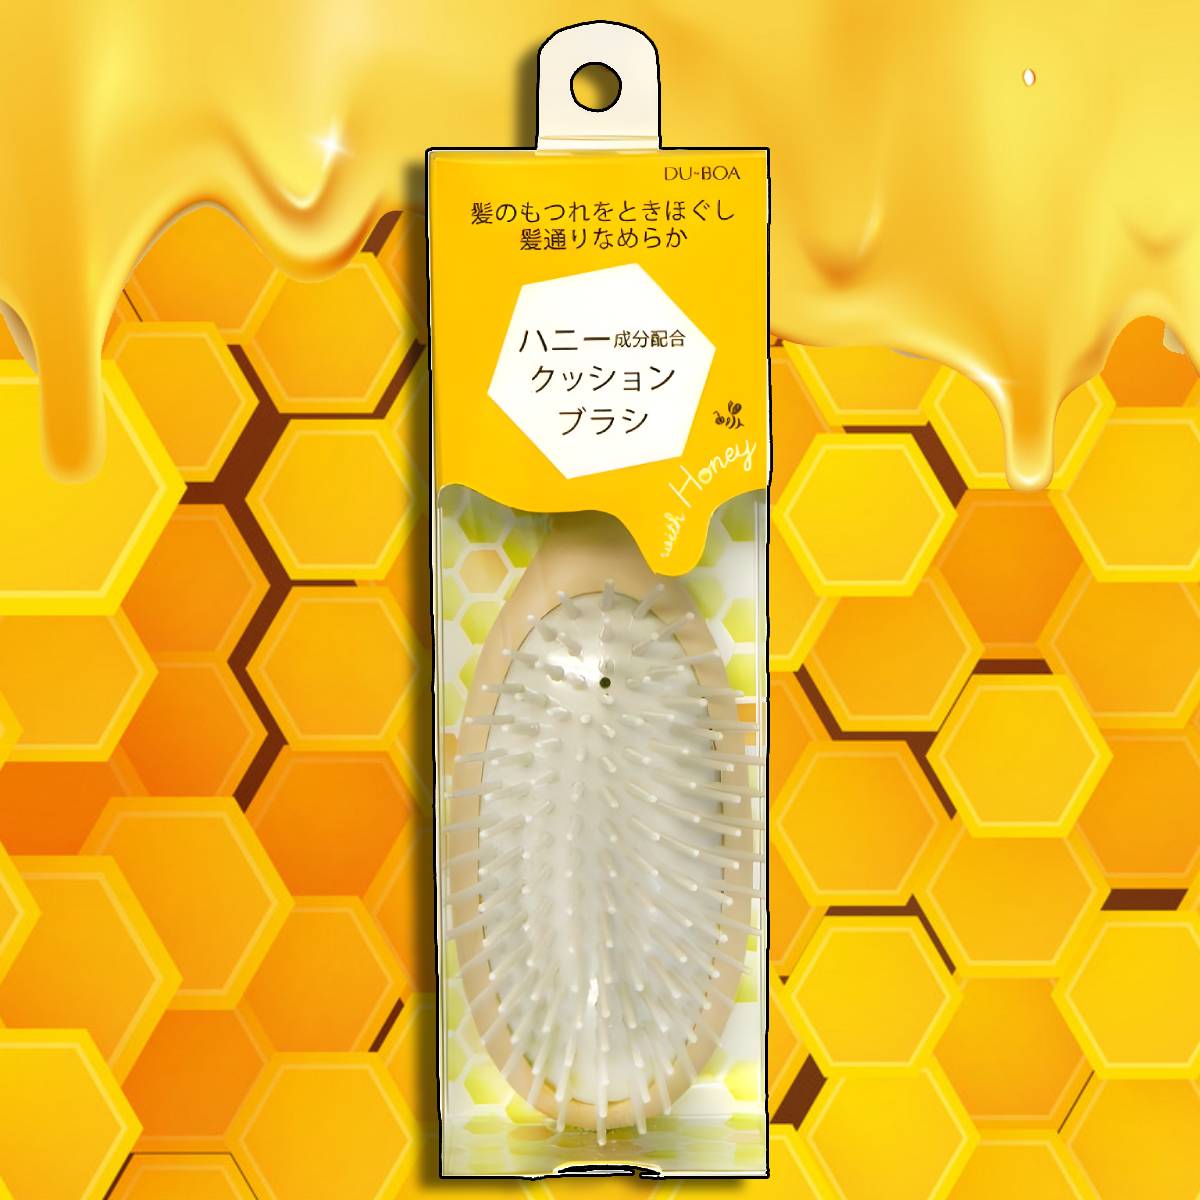 Hair Brush Small Japan Honey